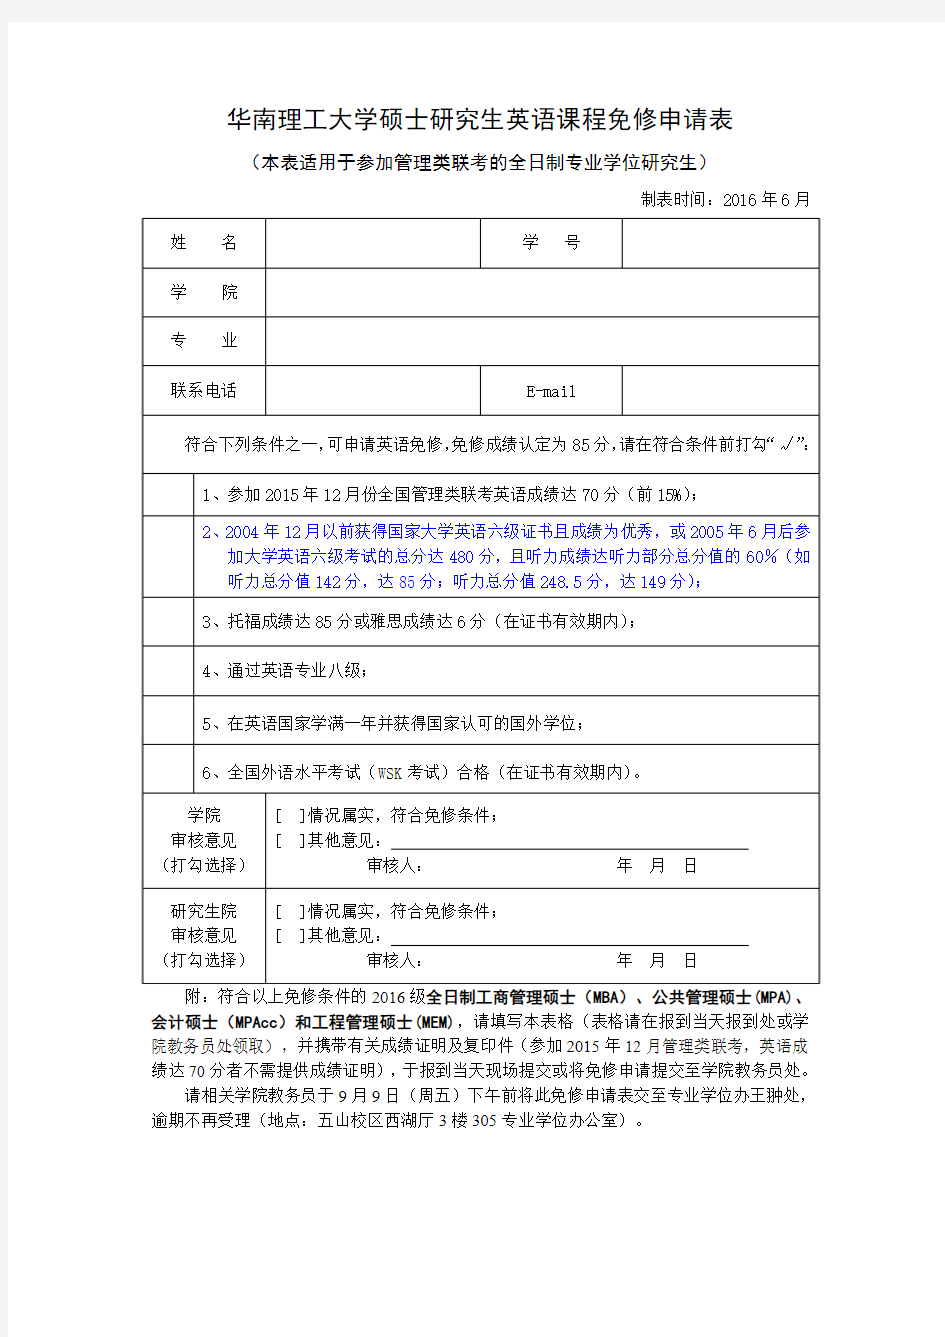 华南理工大学硕士研究生英语课程免修申请表